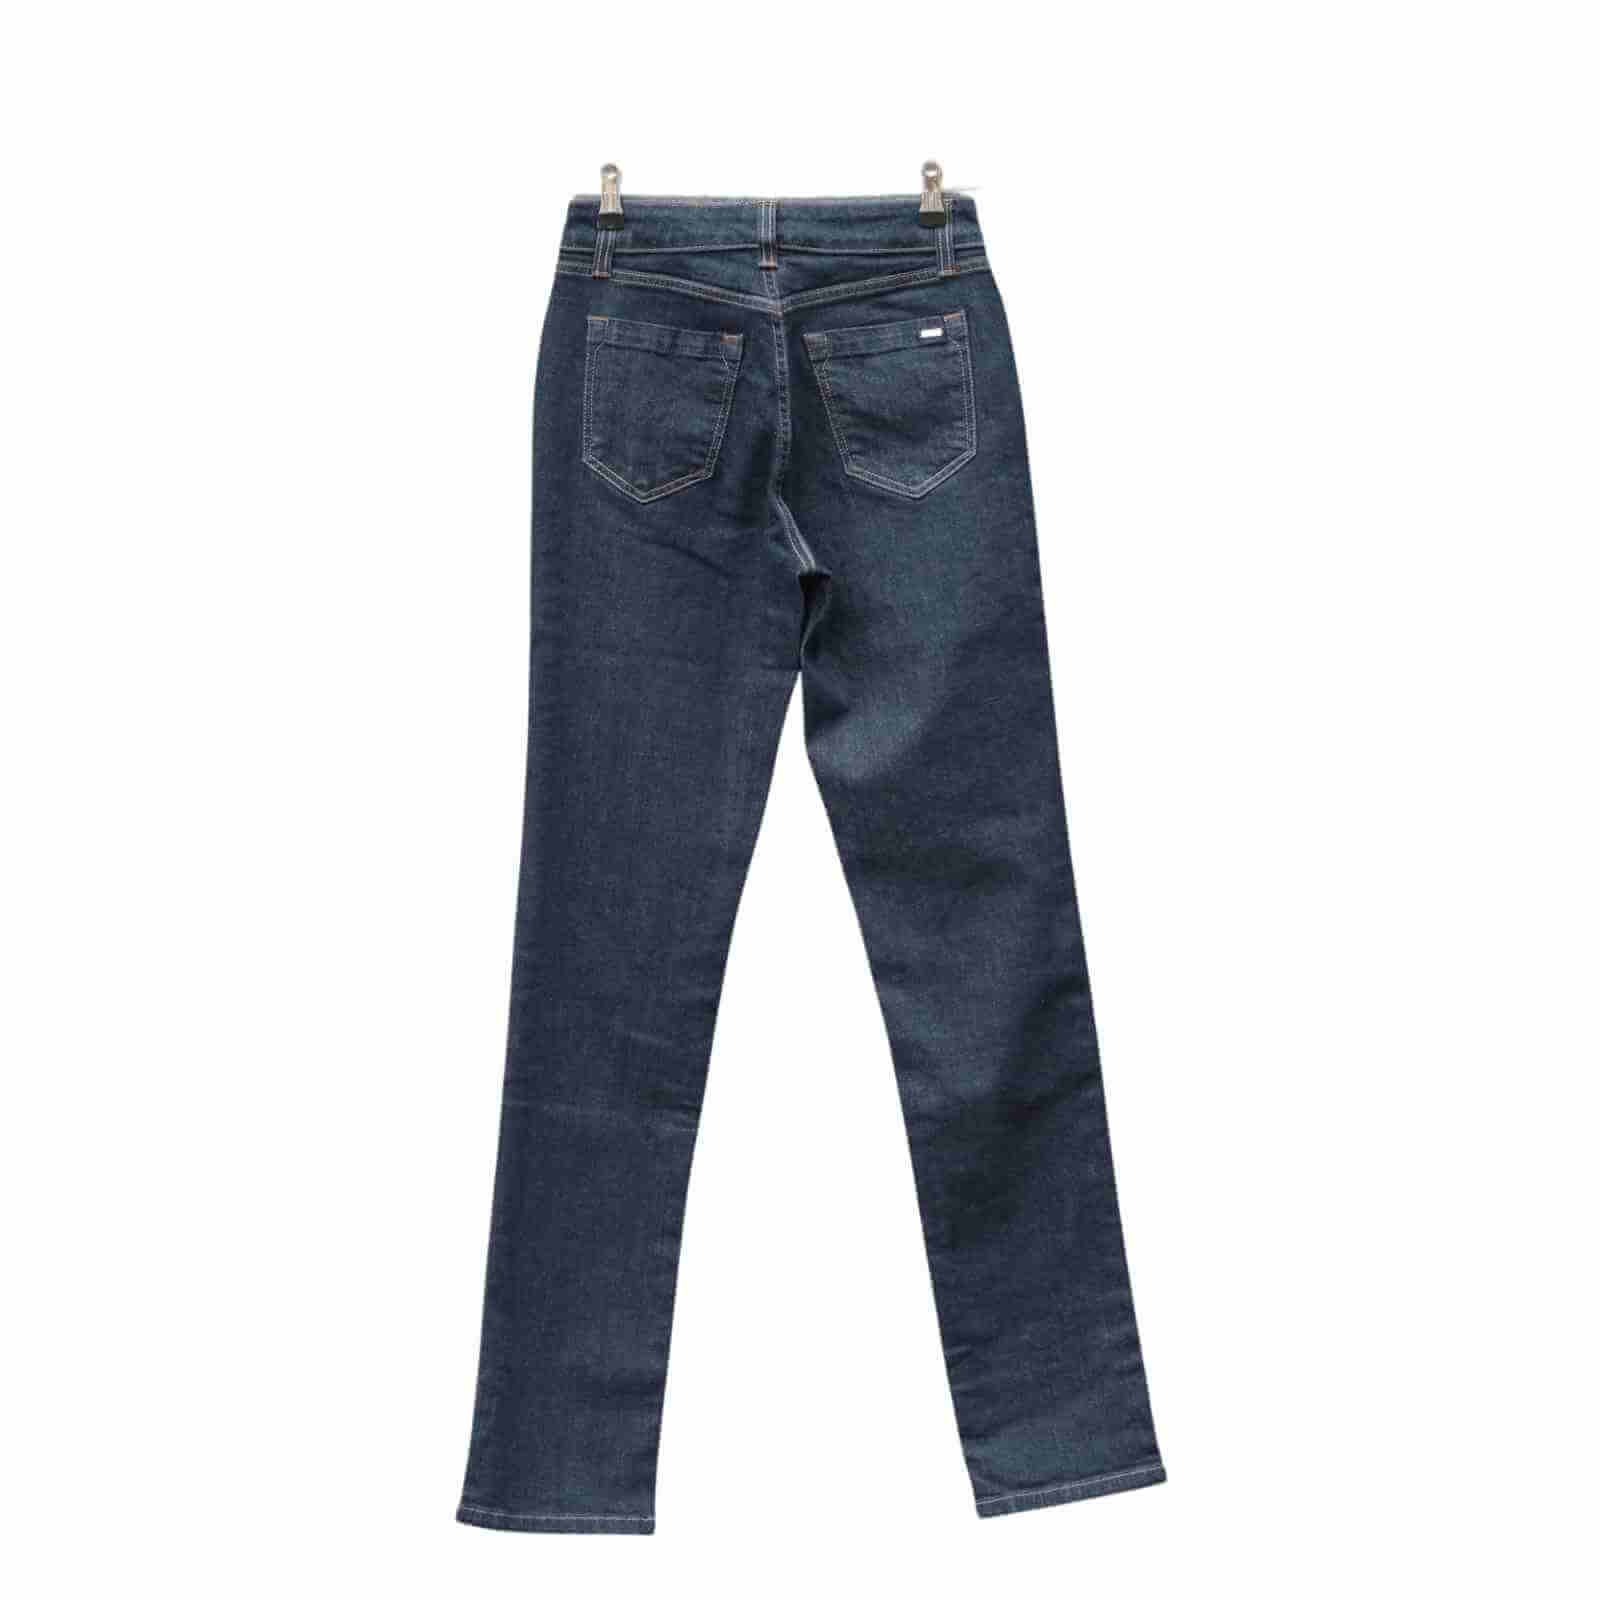 Jonny Q jeans Catherine 682 klassisk mørkeblå bagfra